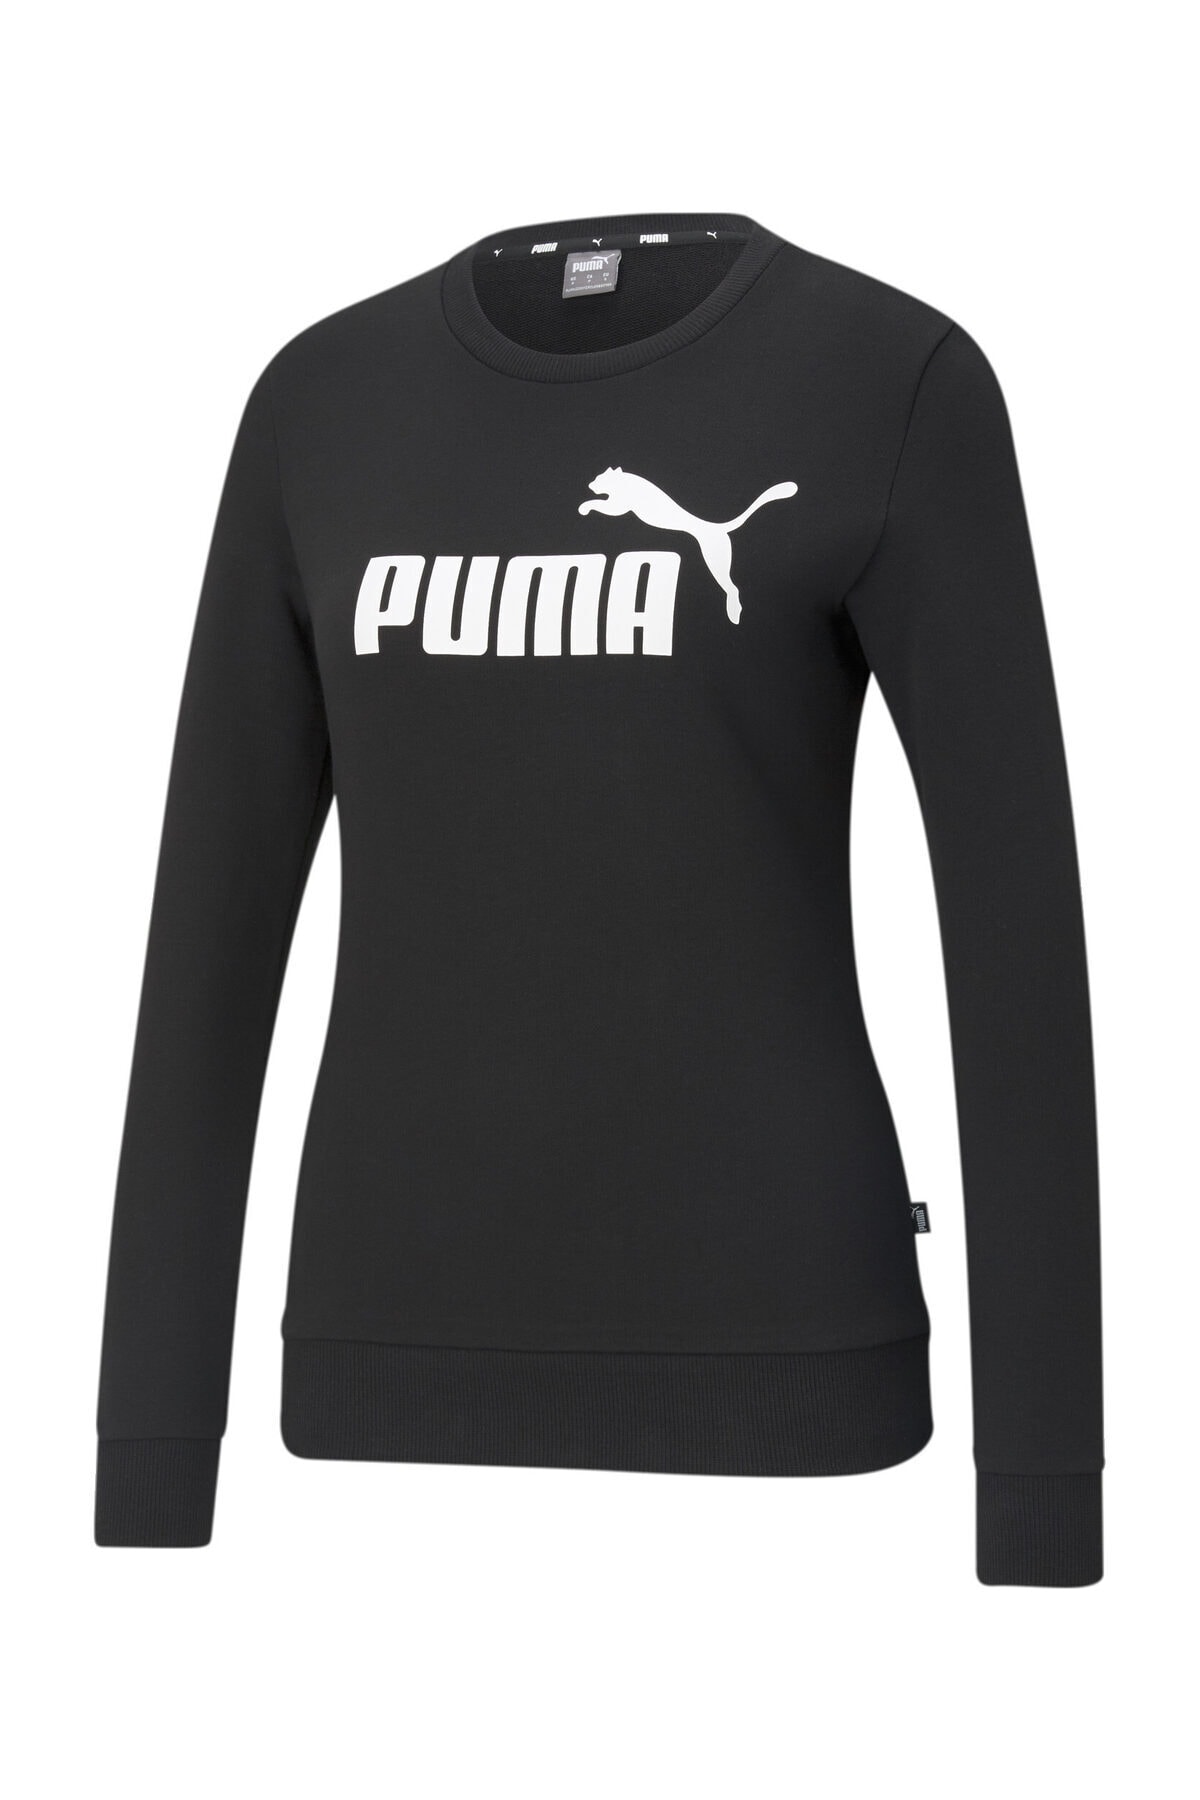 Puma Kadın / Kız Spor Sweatshirt - ESS Logo Crew TR Puma Black - 58678601